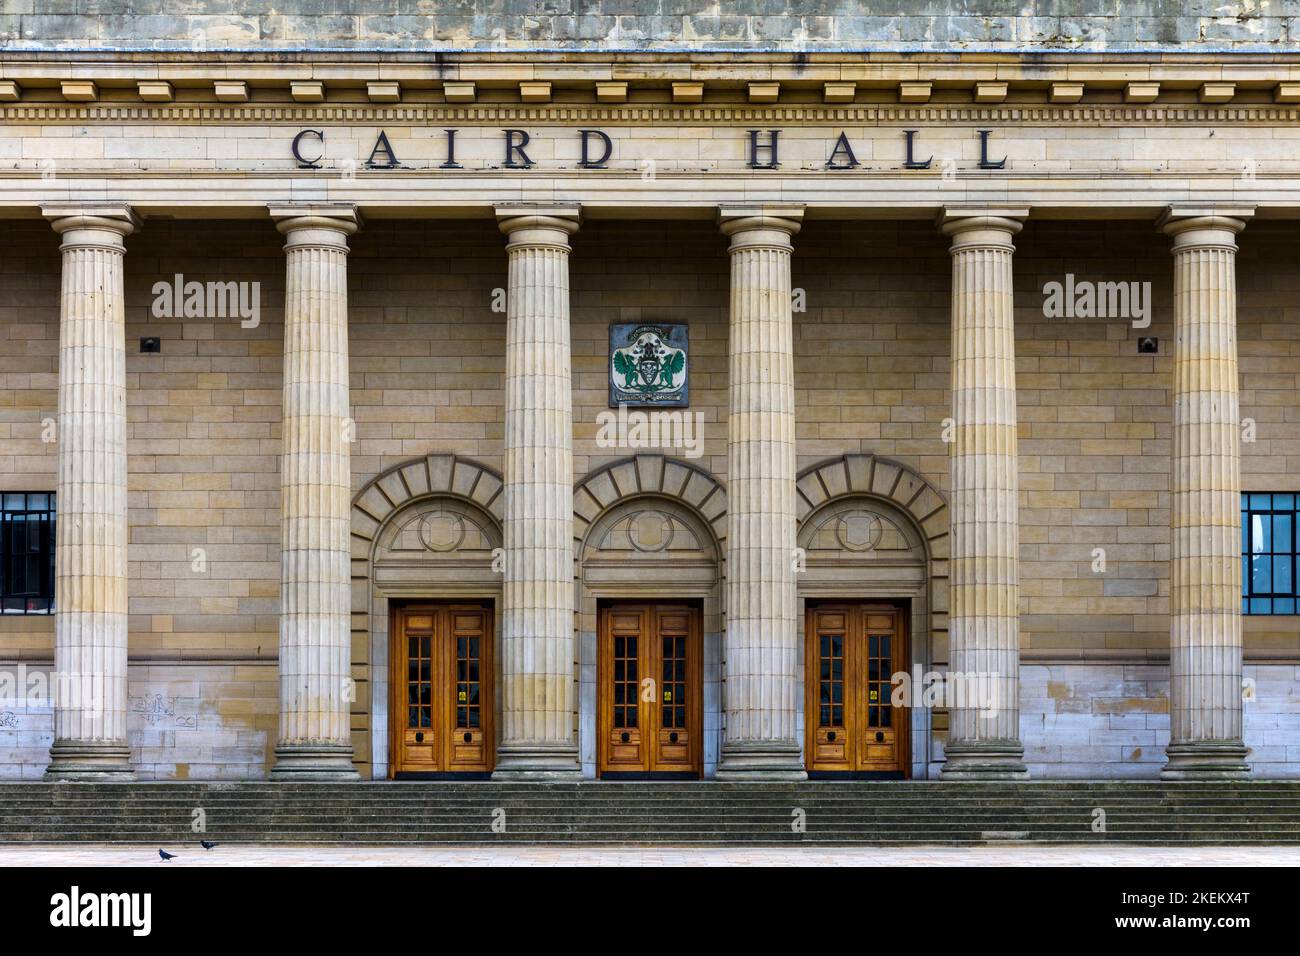 Entrée au Caird Hall, City Square, Dundee, Écosse, Royaume-Uni Banque D'Images